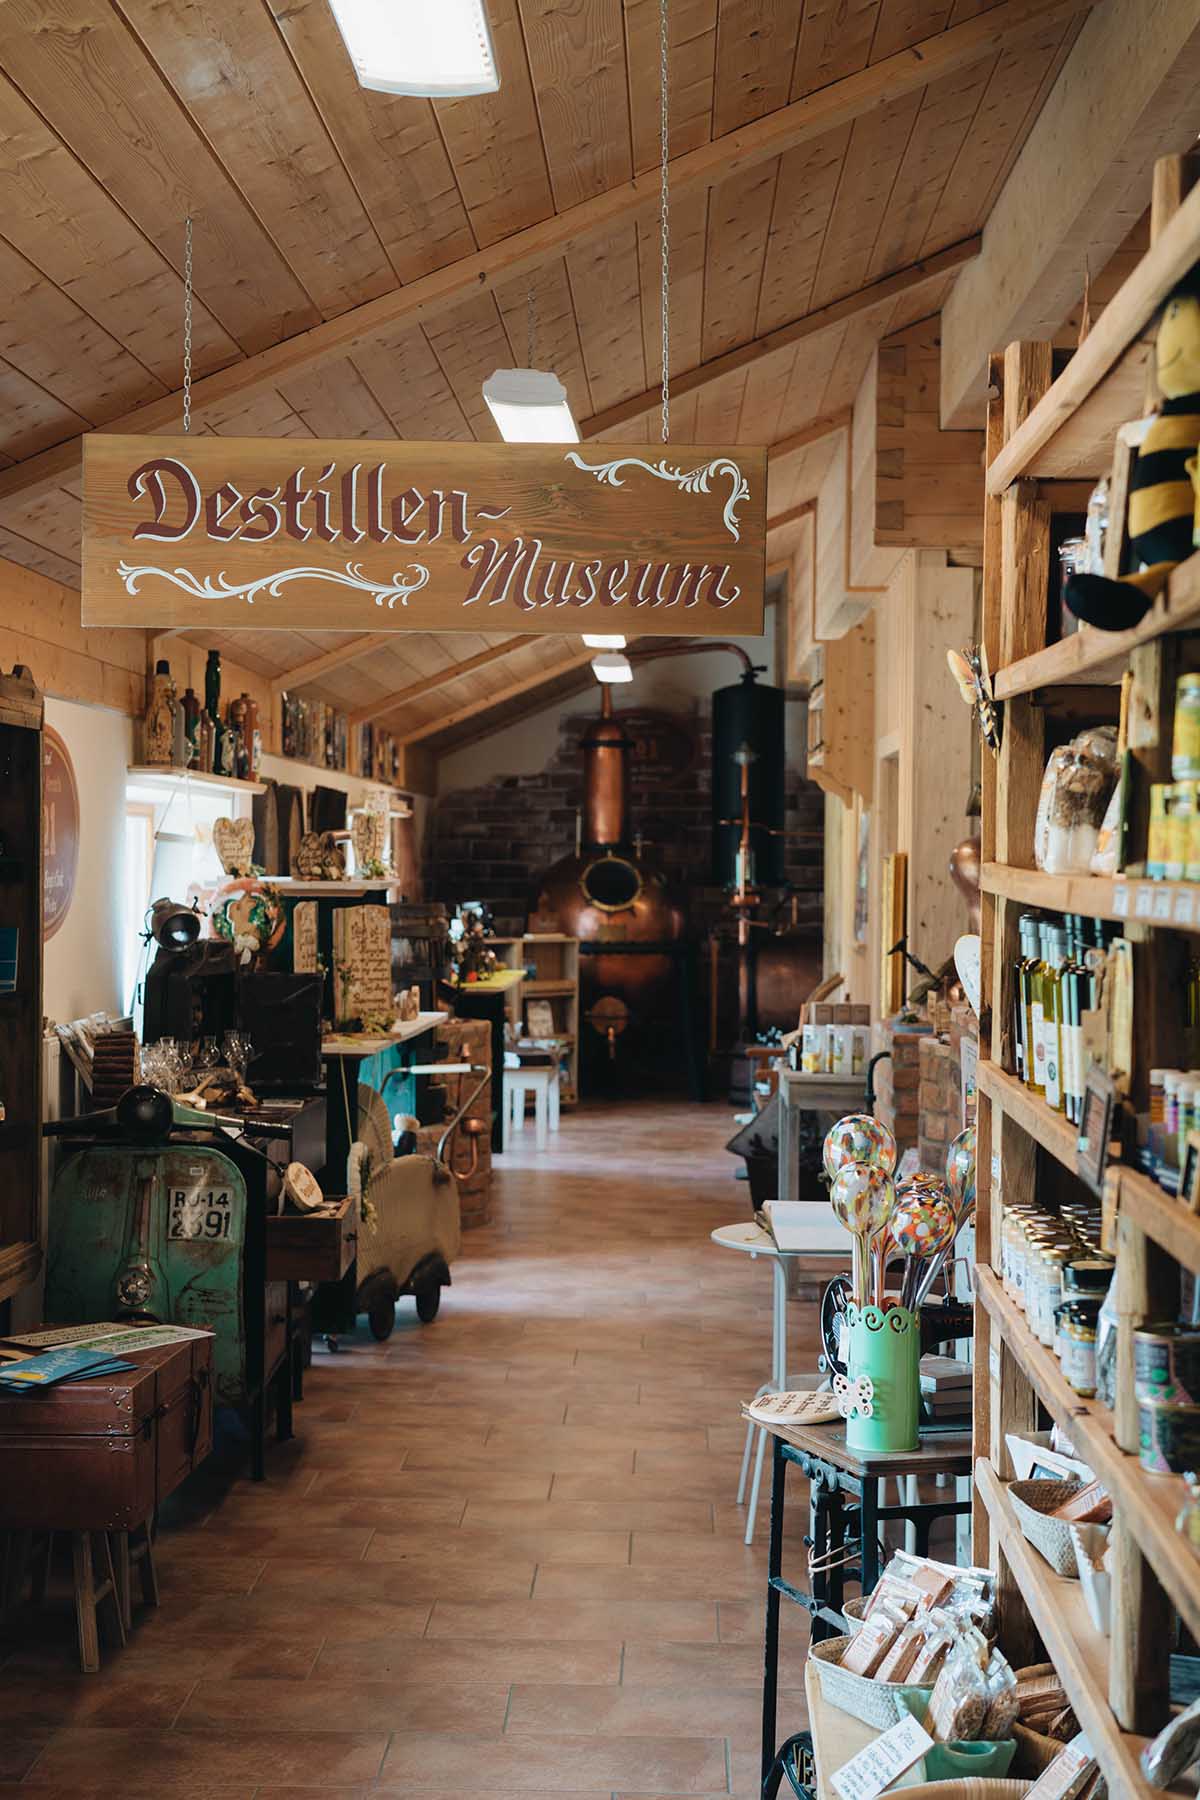 Destillenmuseum im Lamer Winkel mit Aussstellungsstücken